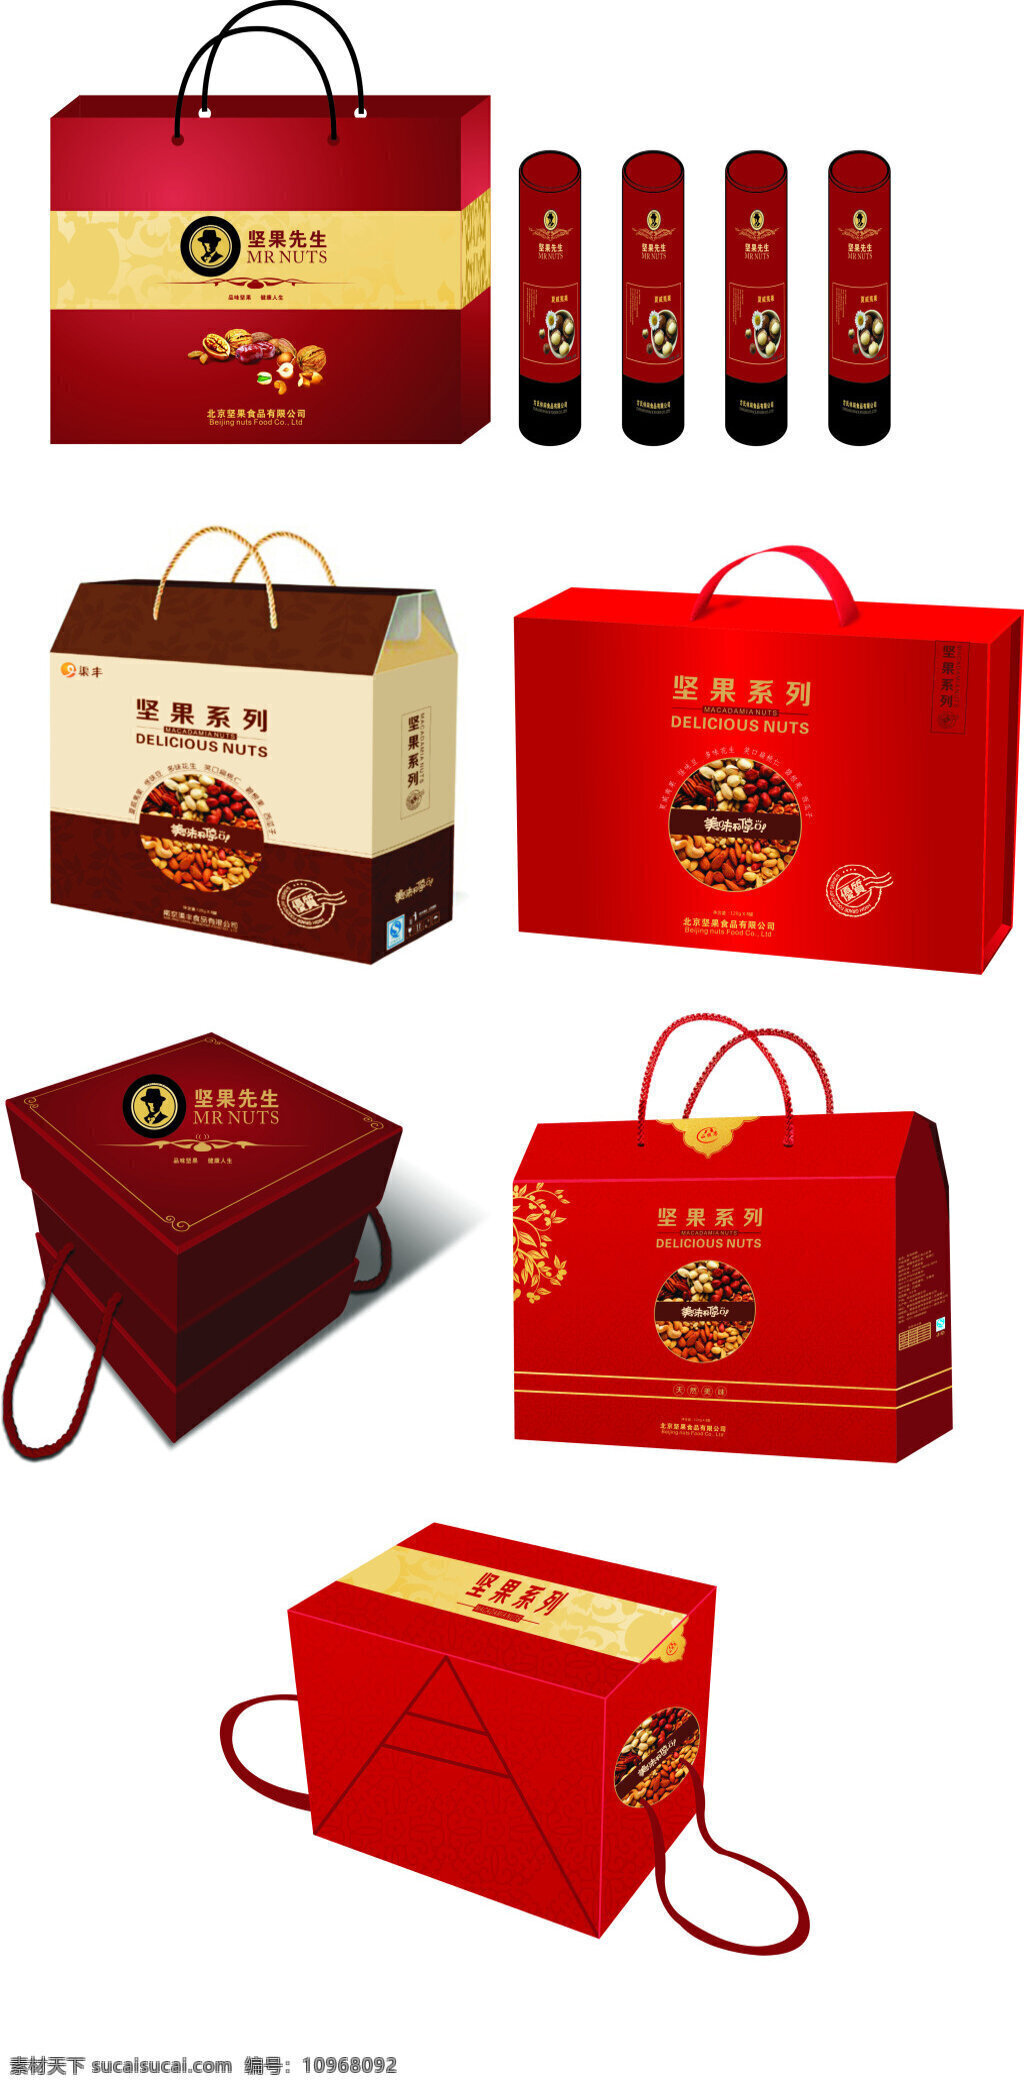 坚果包装盒子 包装盒 产品包装 食品包装 坚果礼盒 精品礼盒